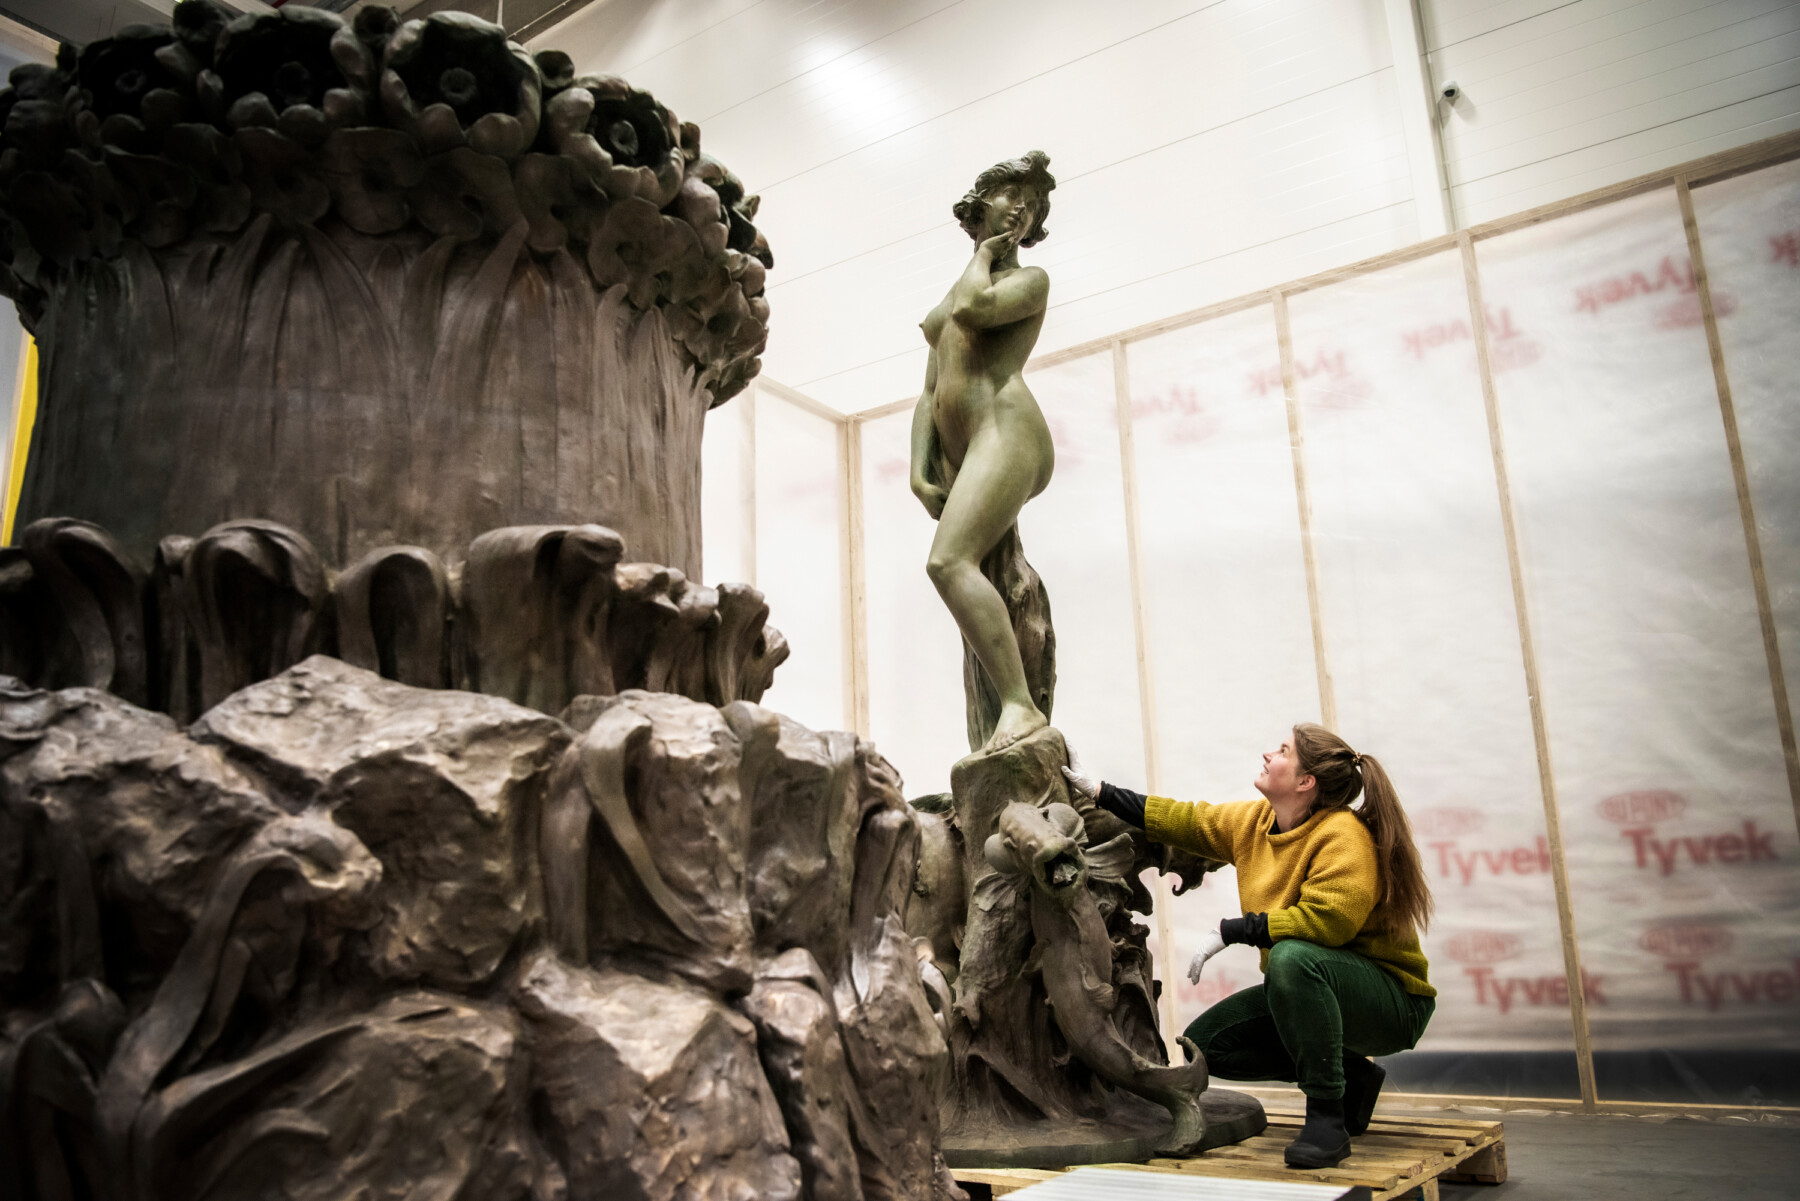 Uma mulher se ajoelha para olhar a base de uma estátua em uma oficina em frente a uma estátua de metal de uma figura feminina.